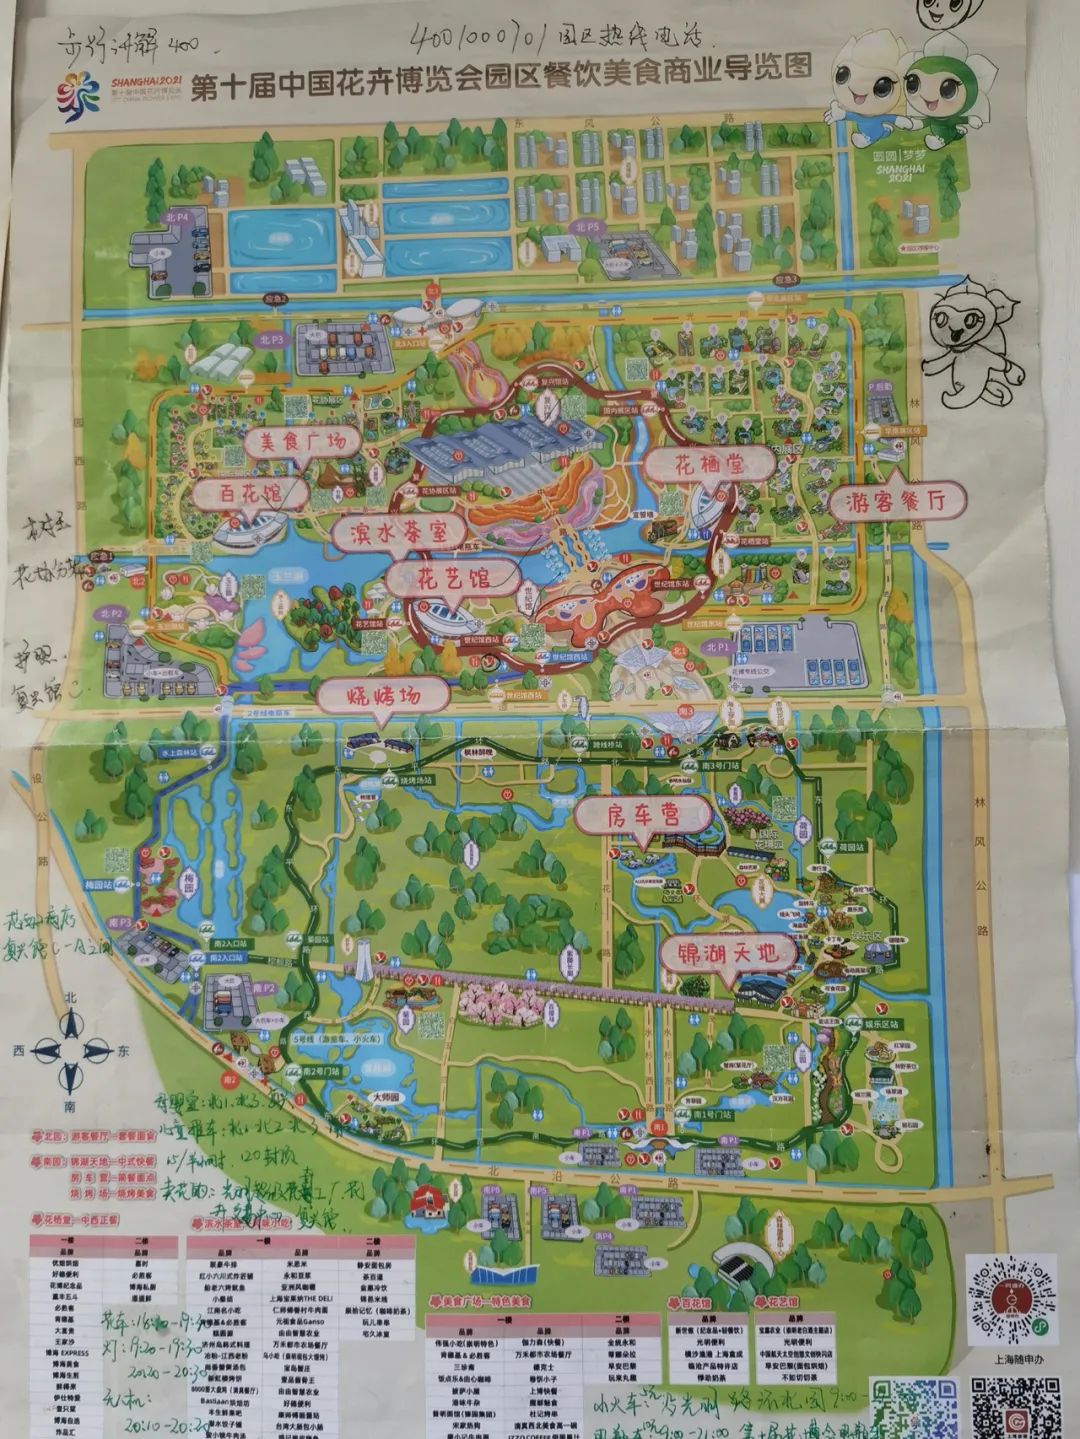 有张独特的花博地图, 上面清楚标注了花博园的各类信息, 游客们咨询